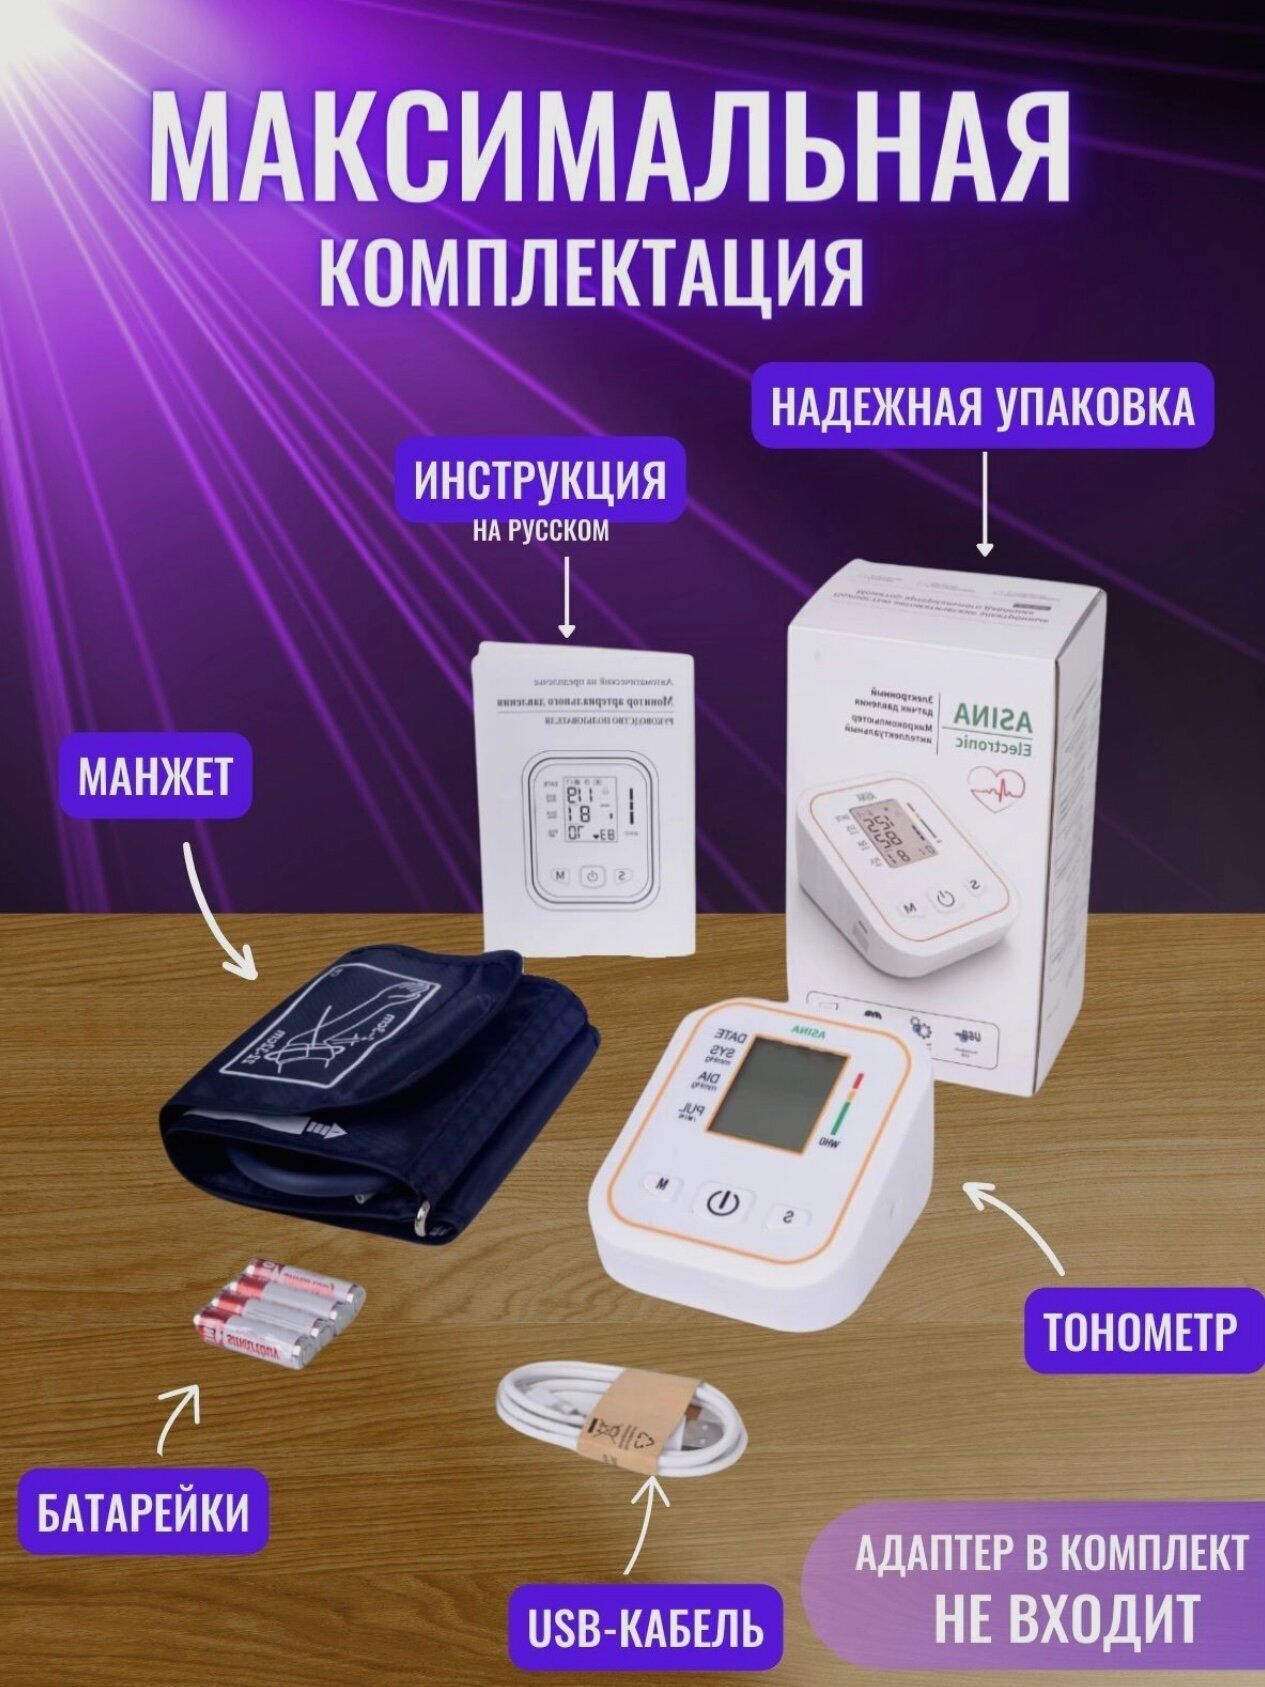 Тонометр для измерения с русской озвучкой ASINA Electronic артериального давления автоматический на предплечье